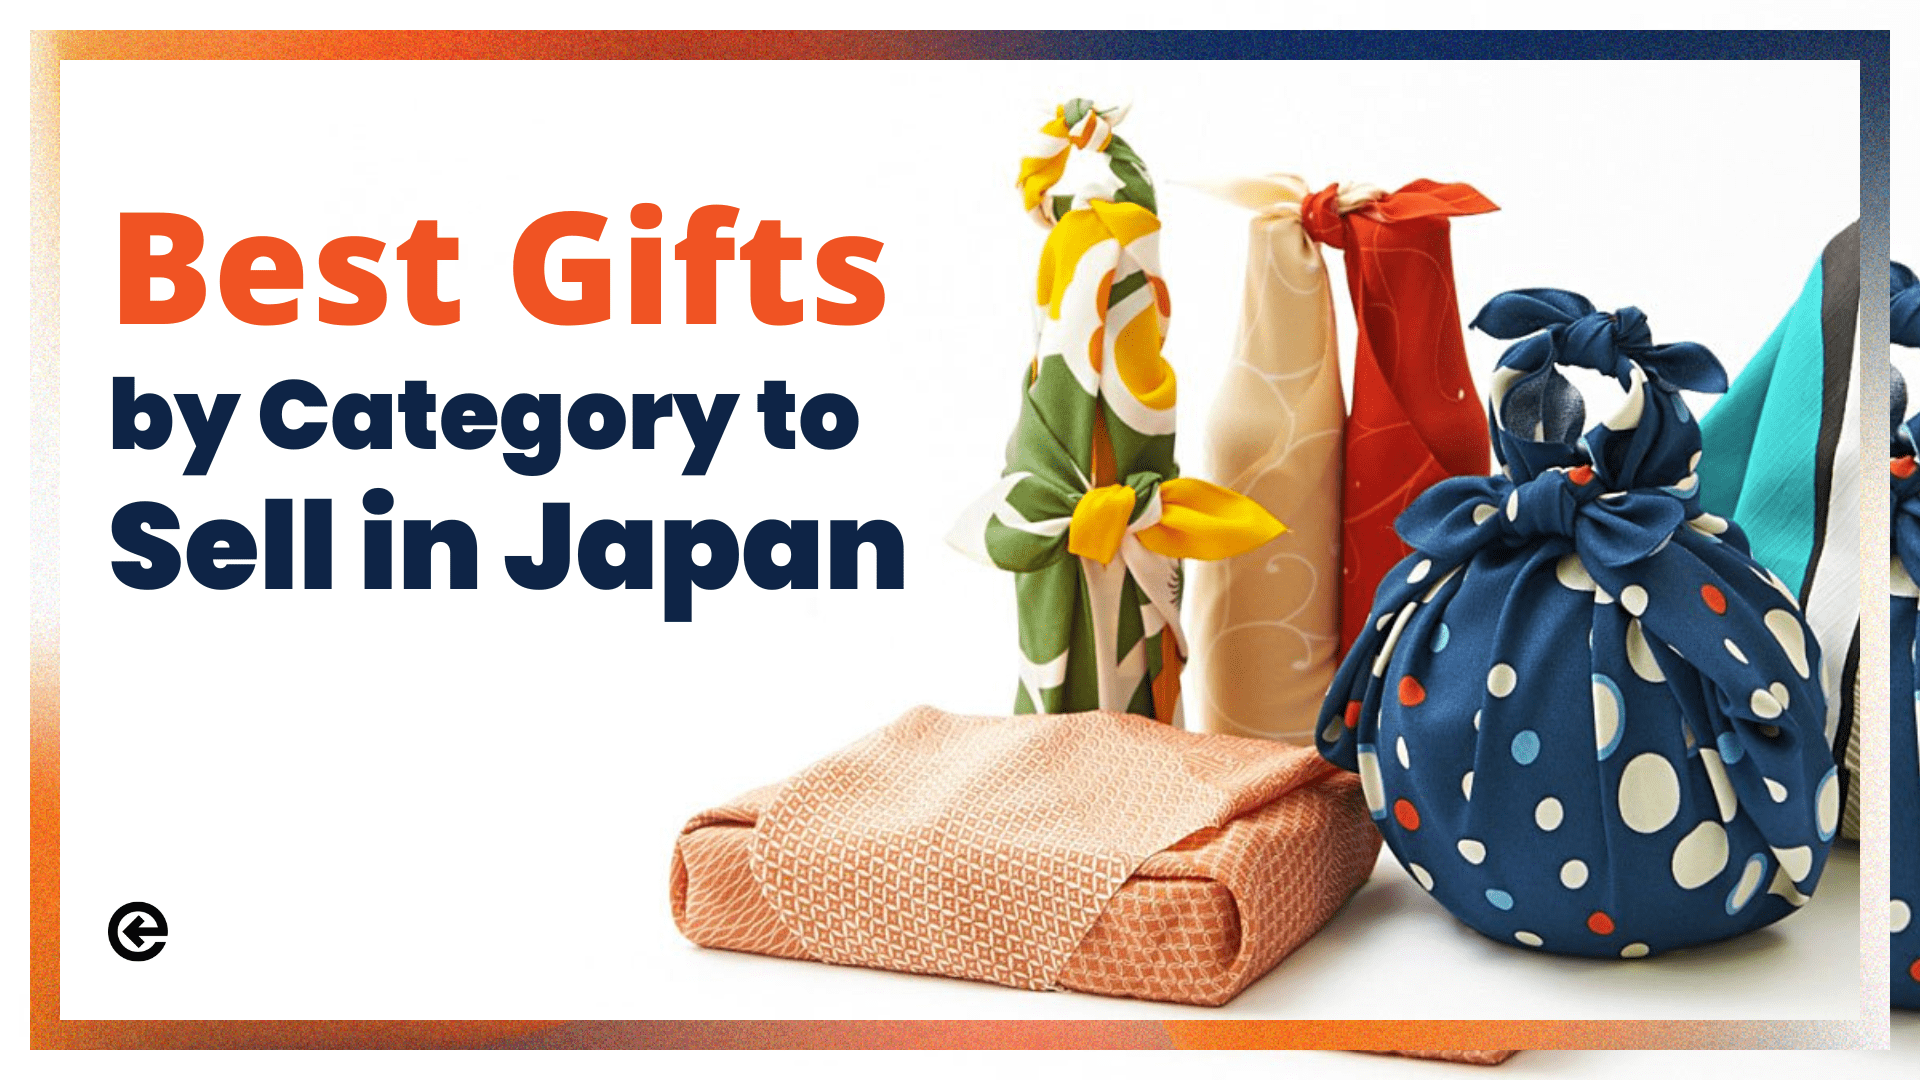 जापान में बेचने के लिए श्रेणी के अनुसार सर्वश्रेष्ठ उपहार